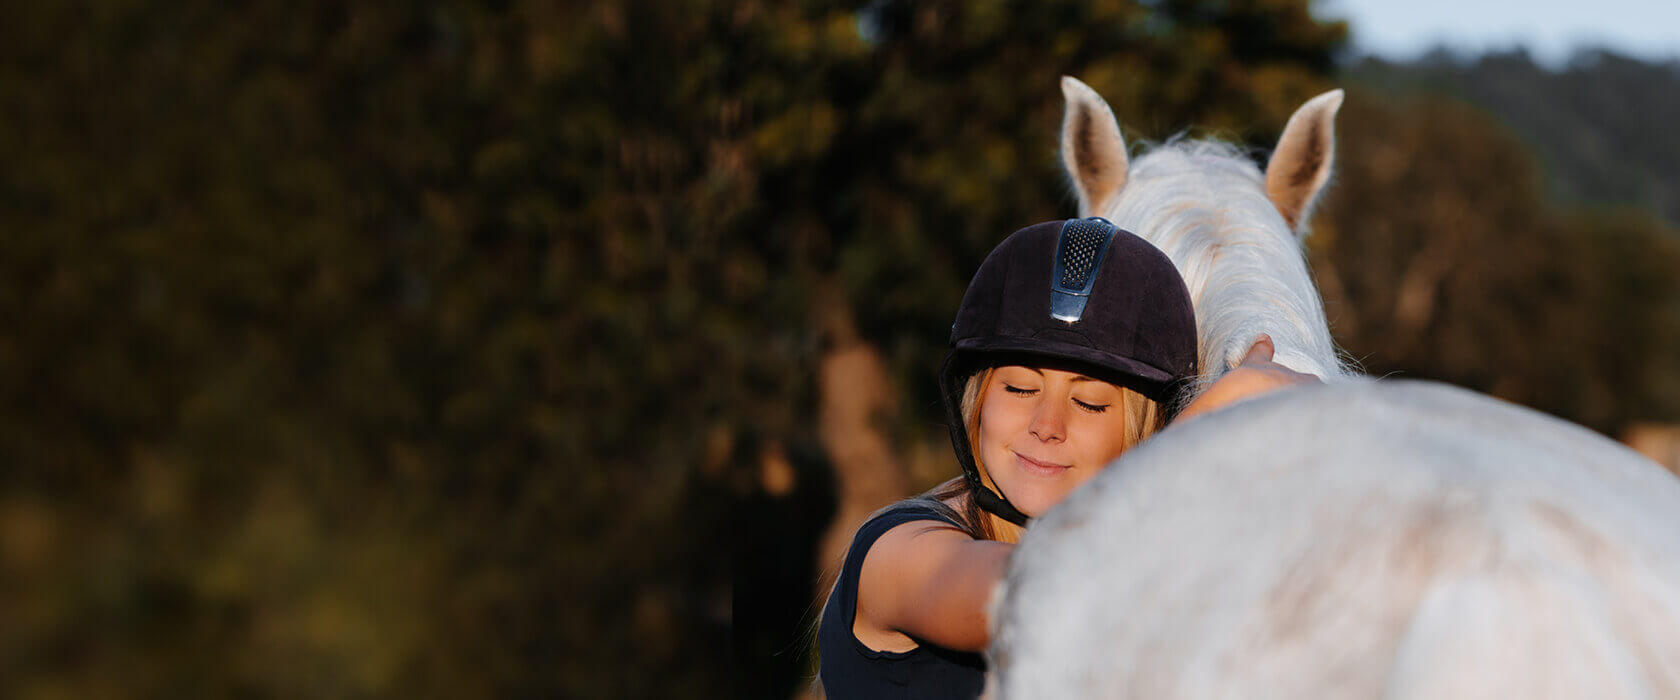 Mädchen mit Helm umarmt ein weißes Pferd